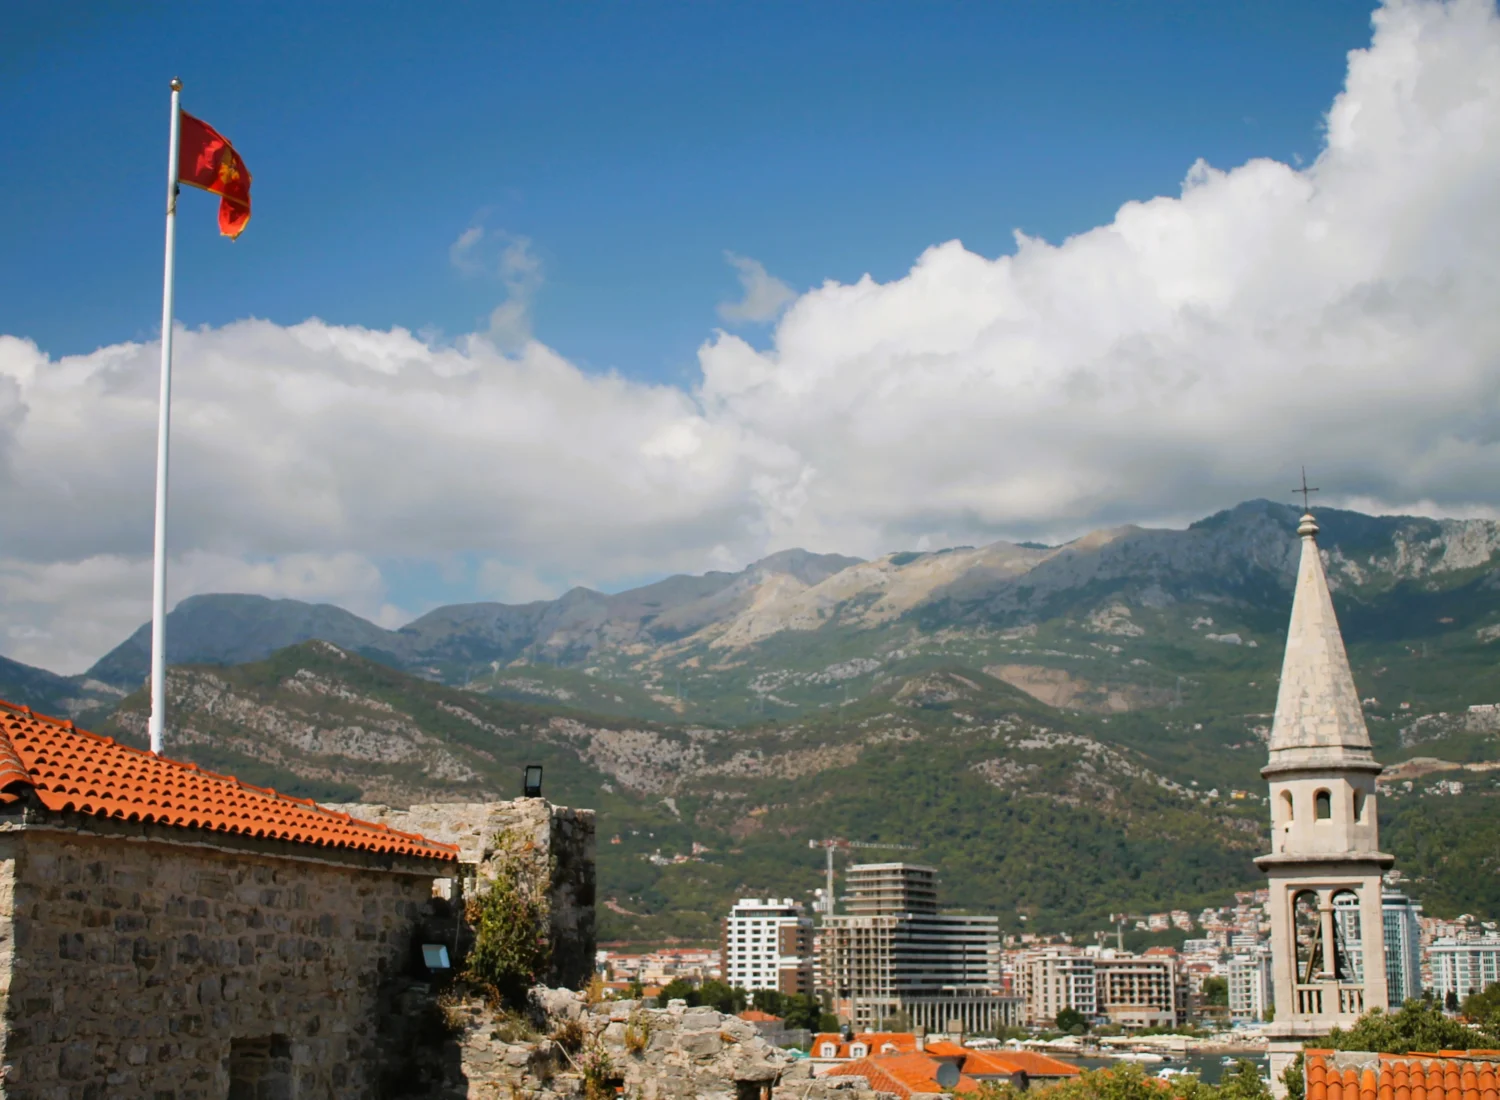 Fahne von Montenegro auf Zitadelle Budva, dahinter Kirchturm der St.-Ivan-Kirche. Begrünte Karstberge mit Wolken im Hintergrund.